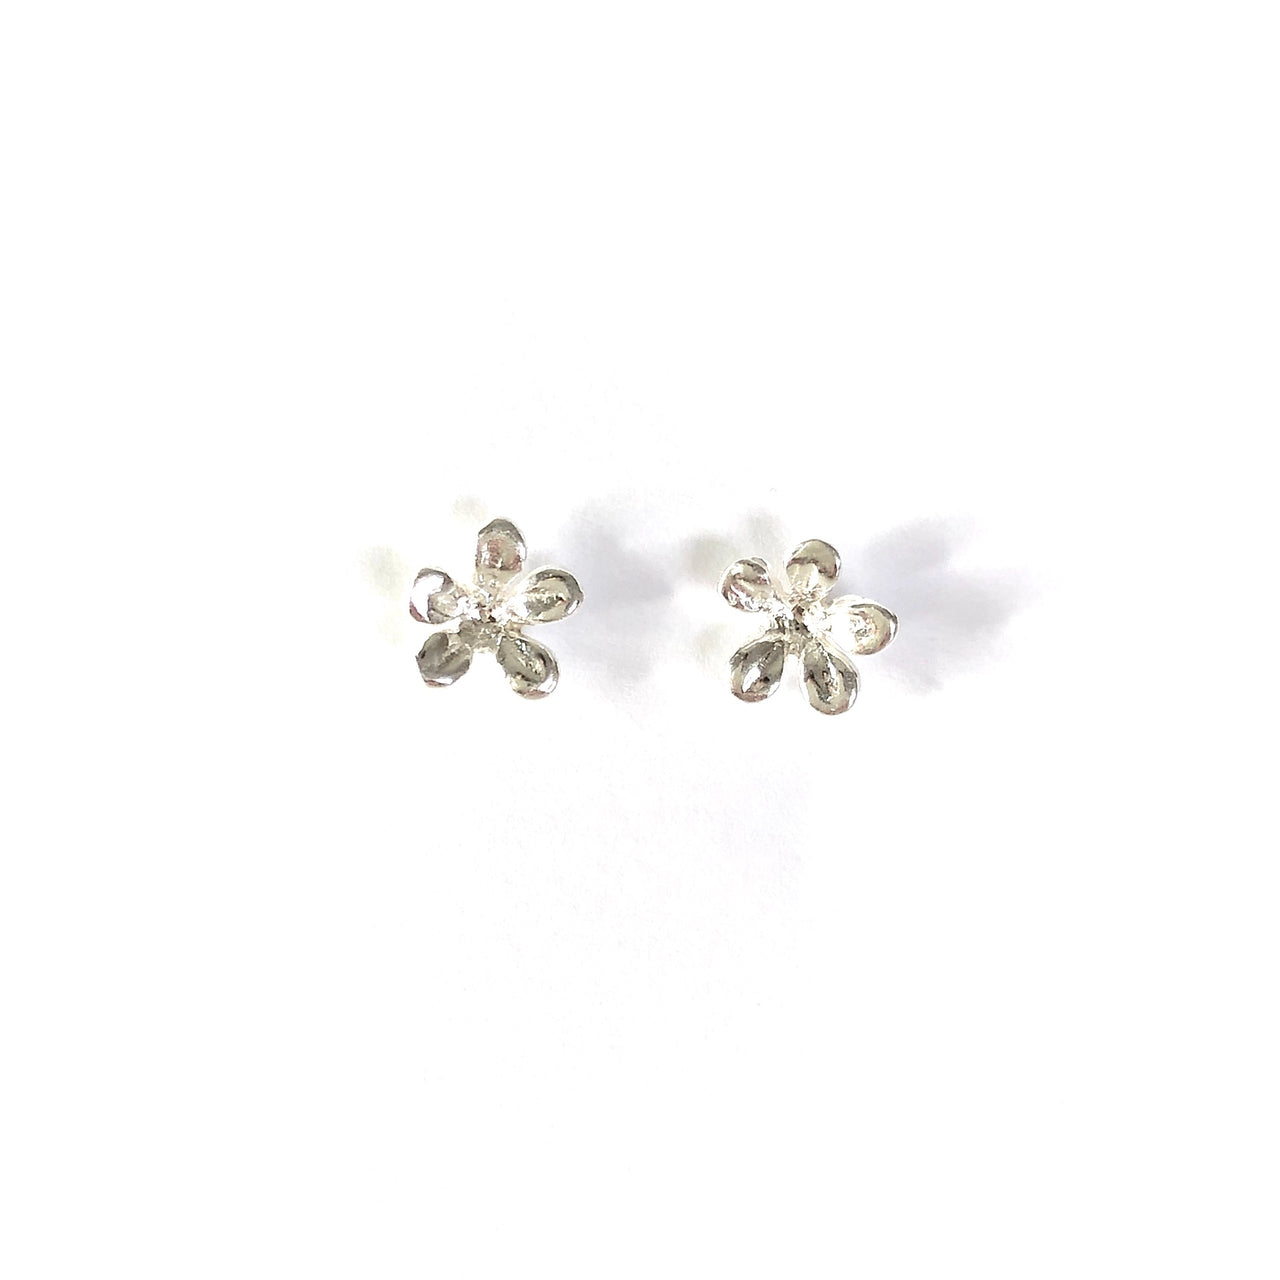 Pendientes de plata de ley 925 con forma de flor. Son small and cute y te quedarán perfectos. Elegantes y discretos.